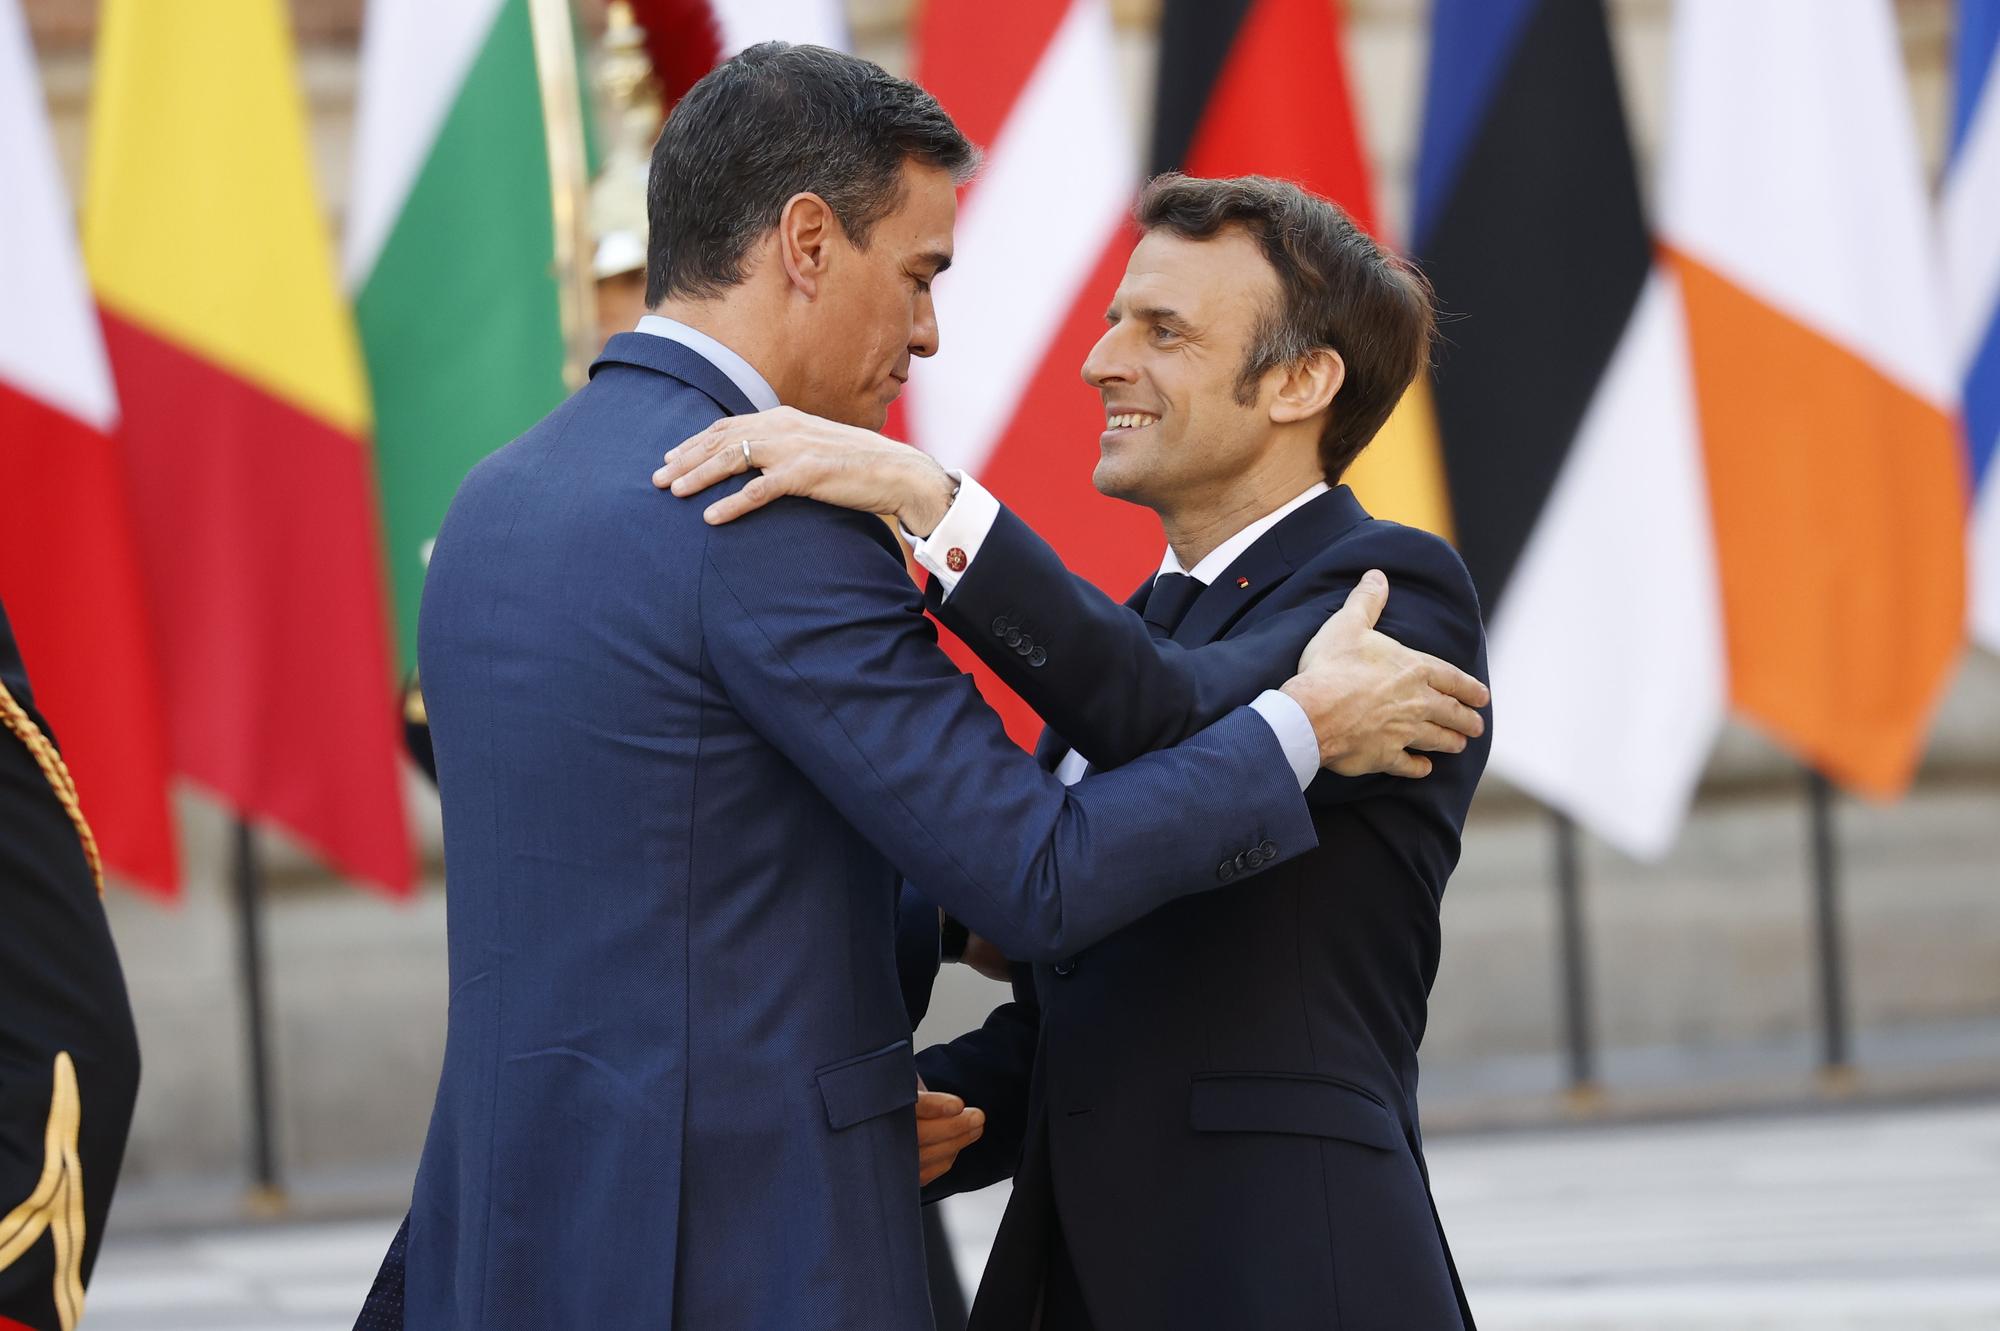 El presidente francés Emmanuel Macron saluda al presidente español, Pedro Sánchez a su llegada a la cumbre de los jefes de Estado y de Gobierno de la Unión Europea.